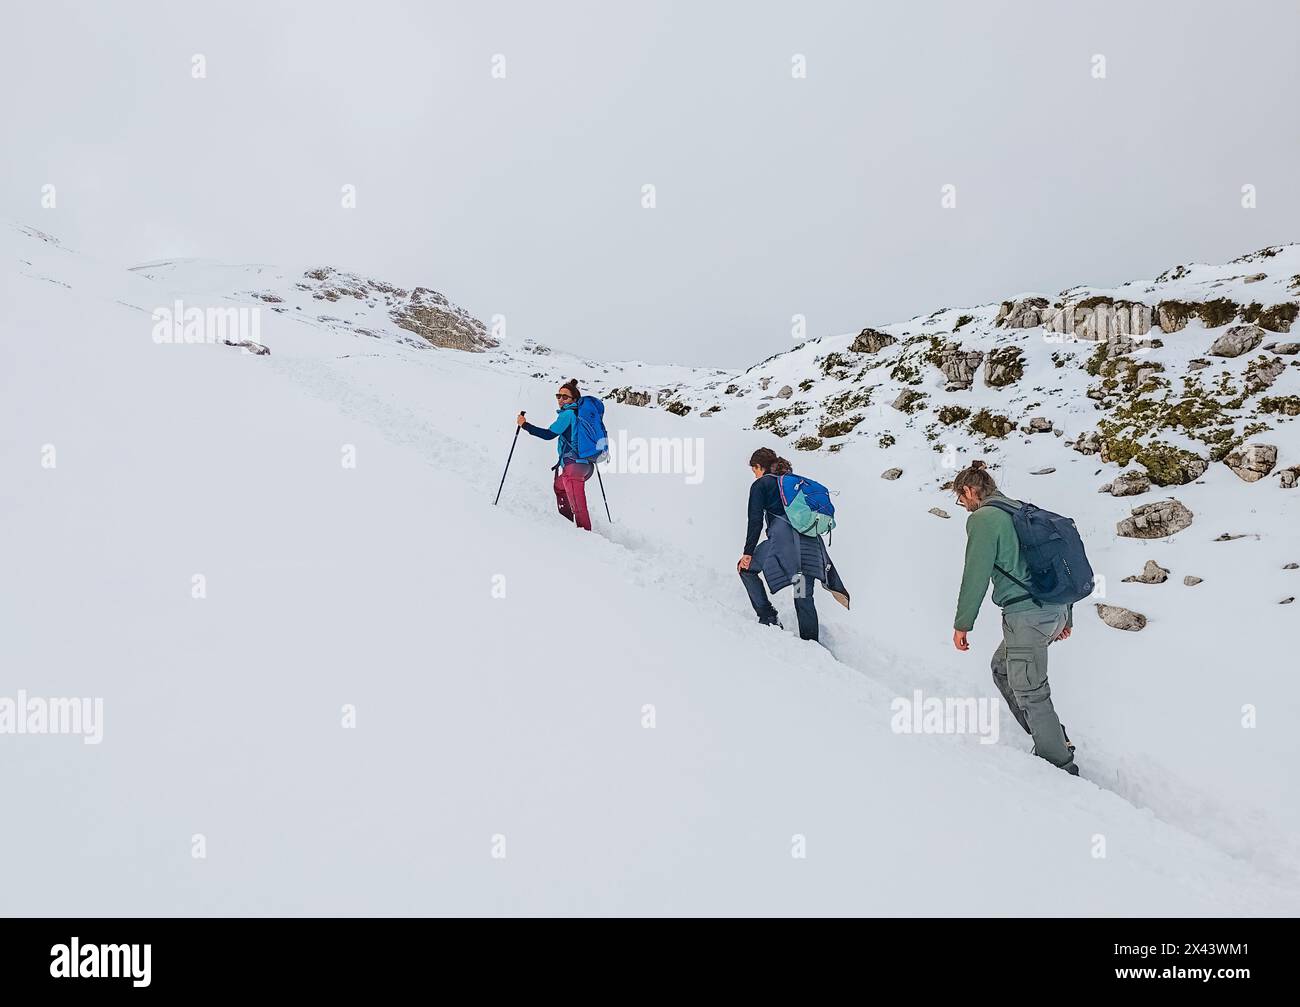 Rifugio Sebastiani, Italia - il rifugio con neve nel parco naturale del Sirente Velino, dall'altopiano sciistico di campo felice in Abruzzo. Foto Stock